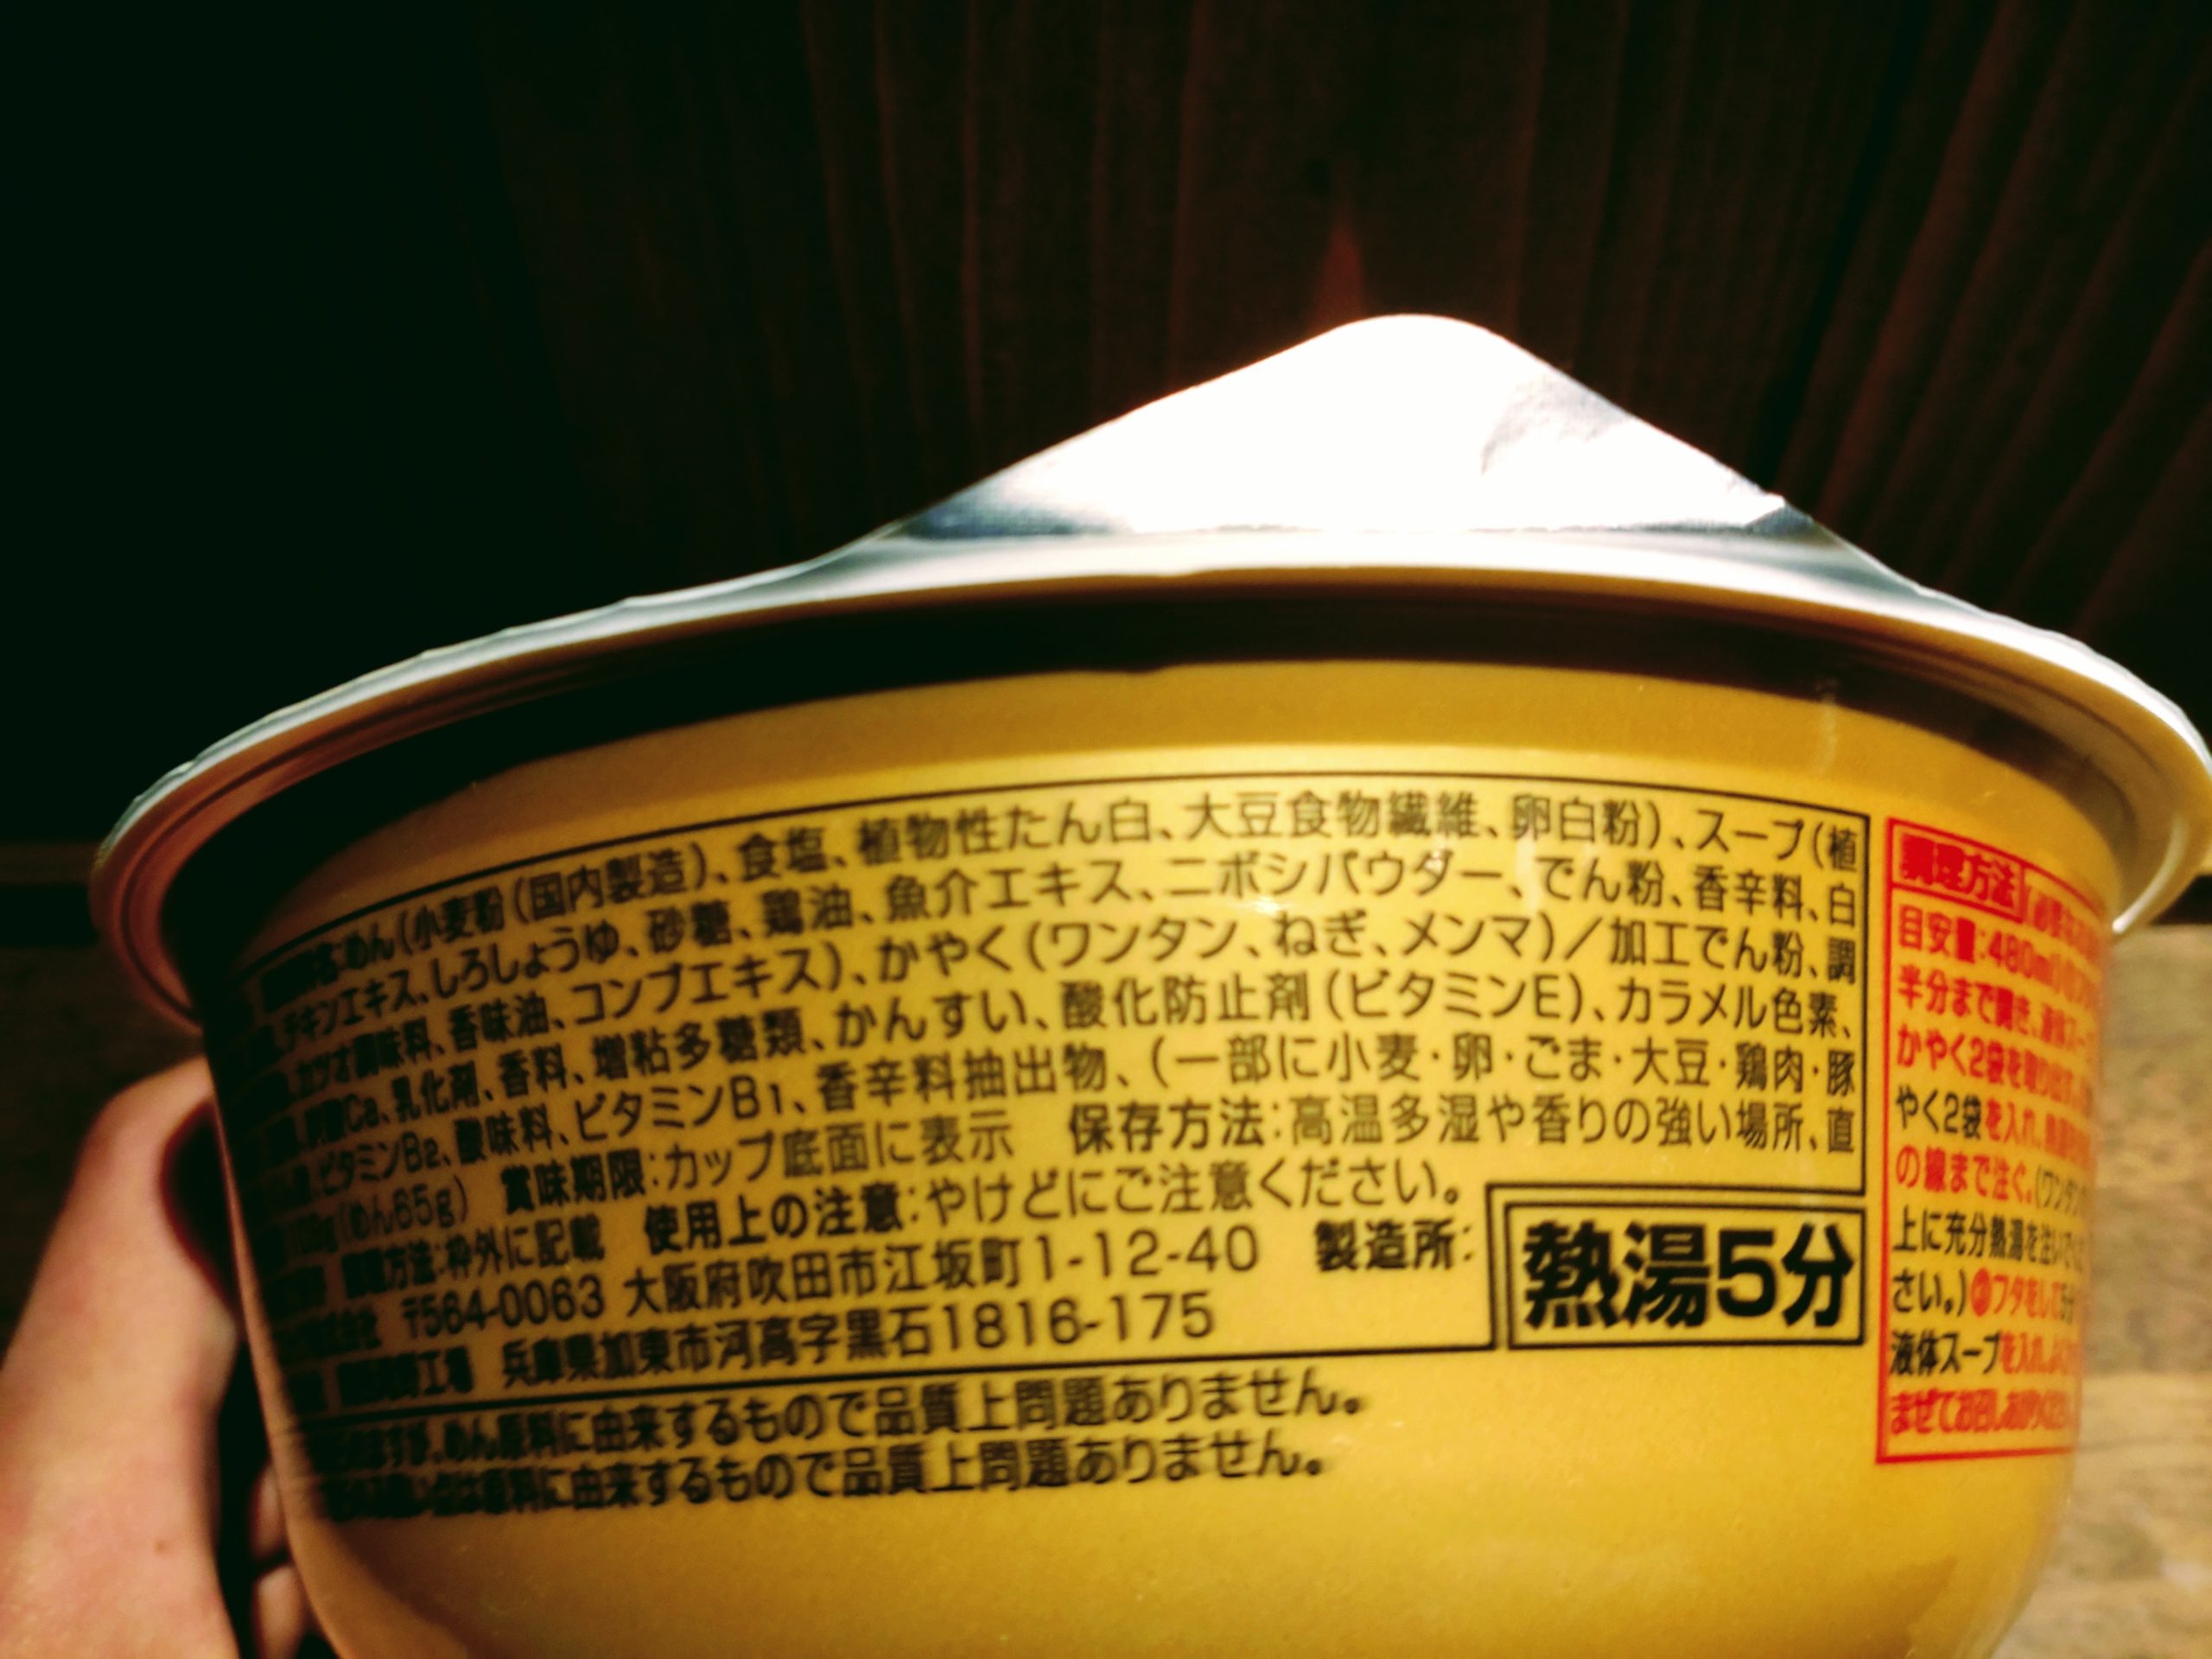 ワンタン麺の最高峰の店 八雲の一杯 ワンタン麺 白醤油味の原材料名